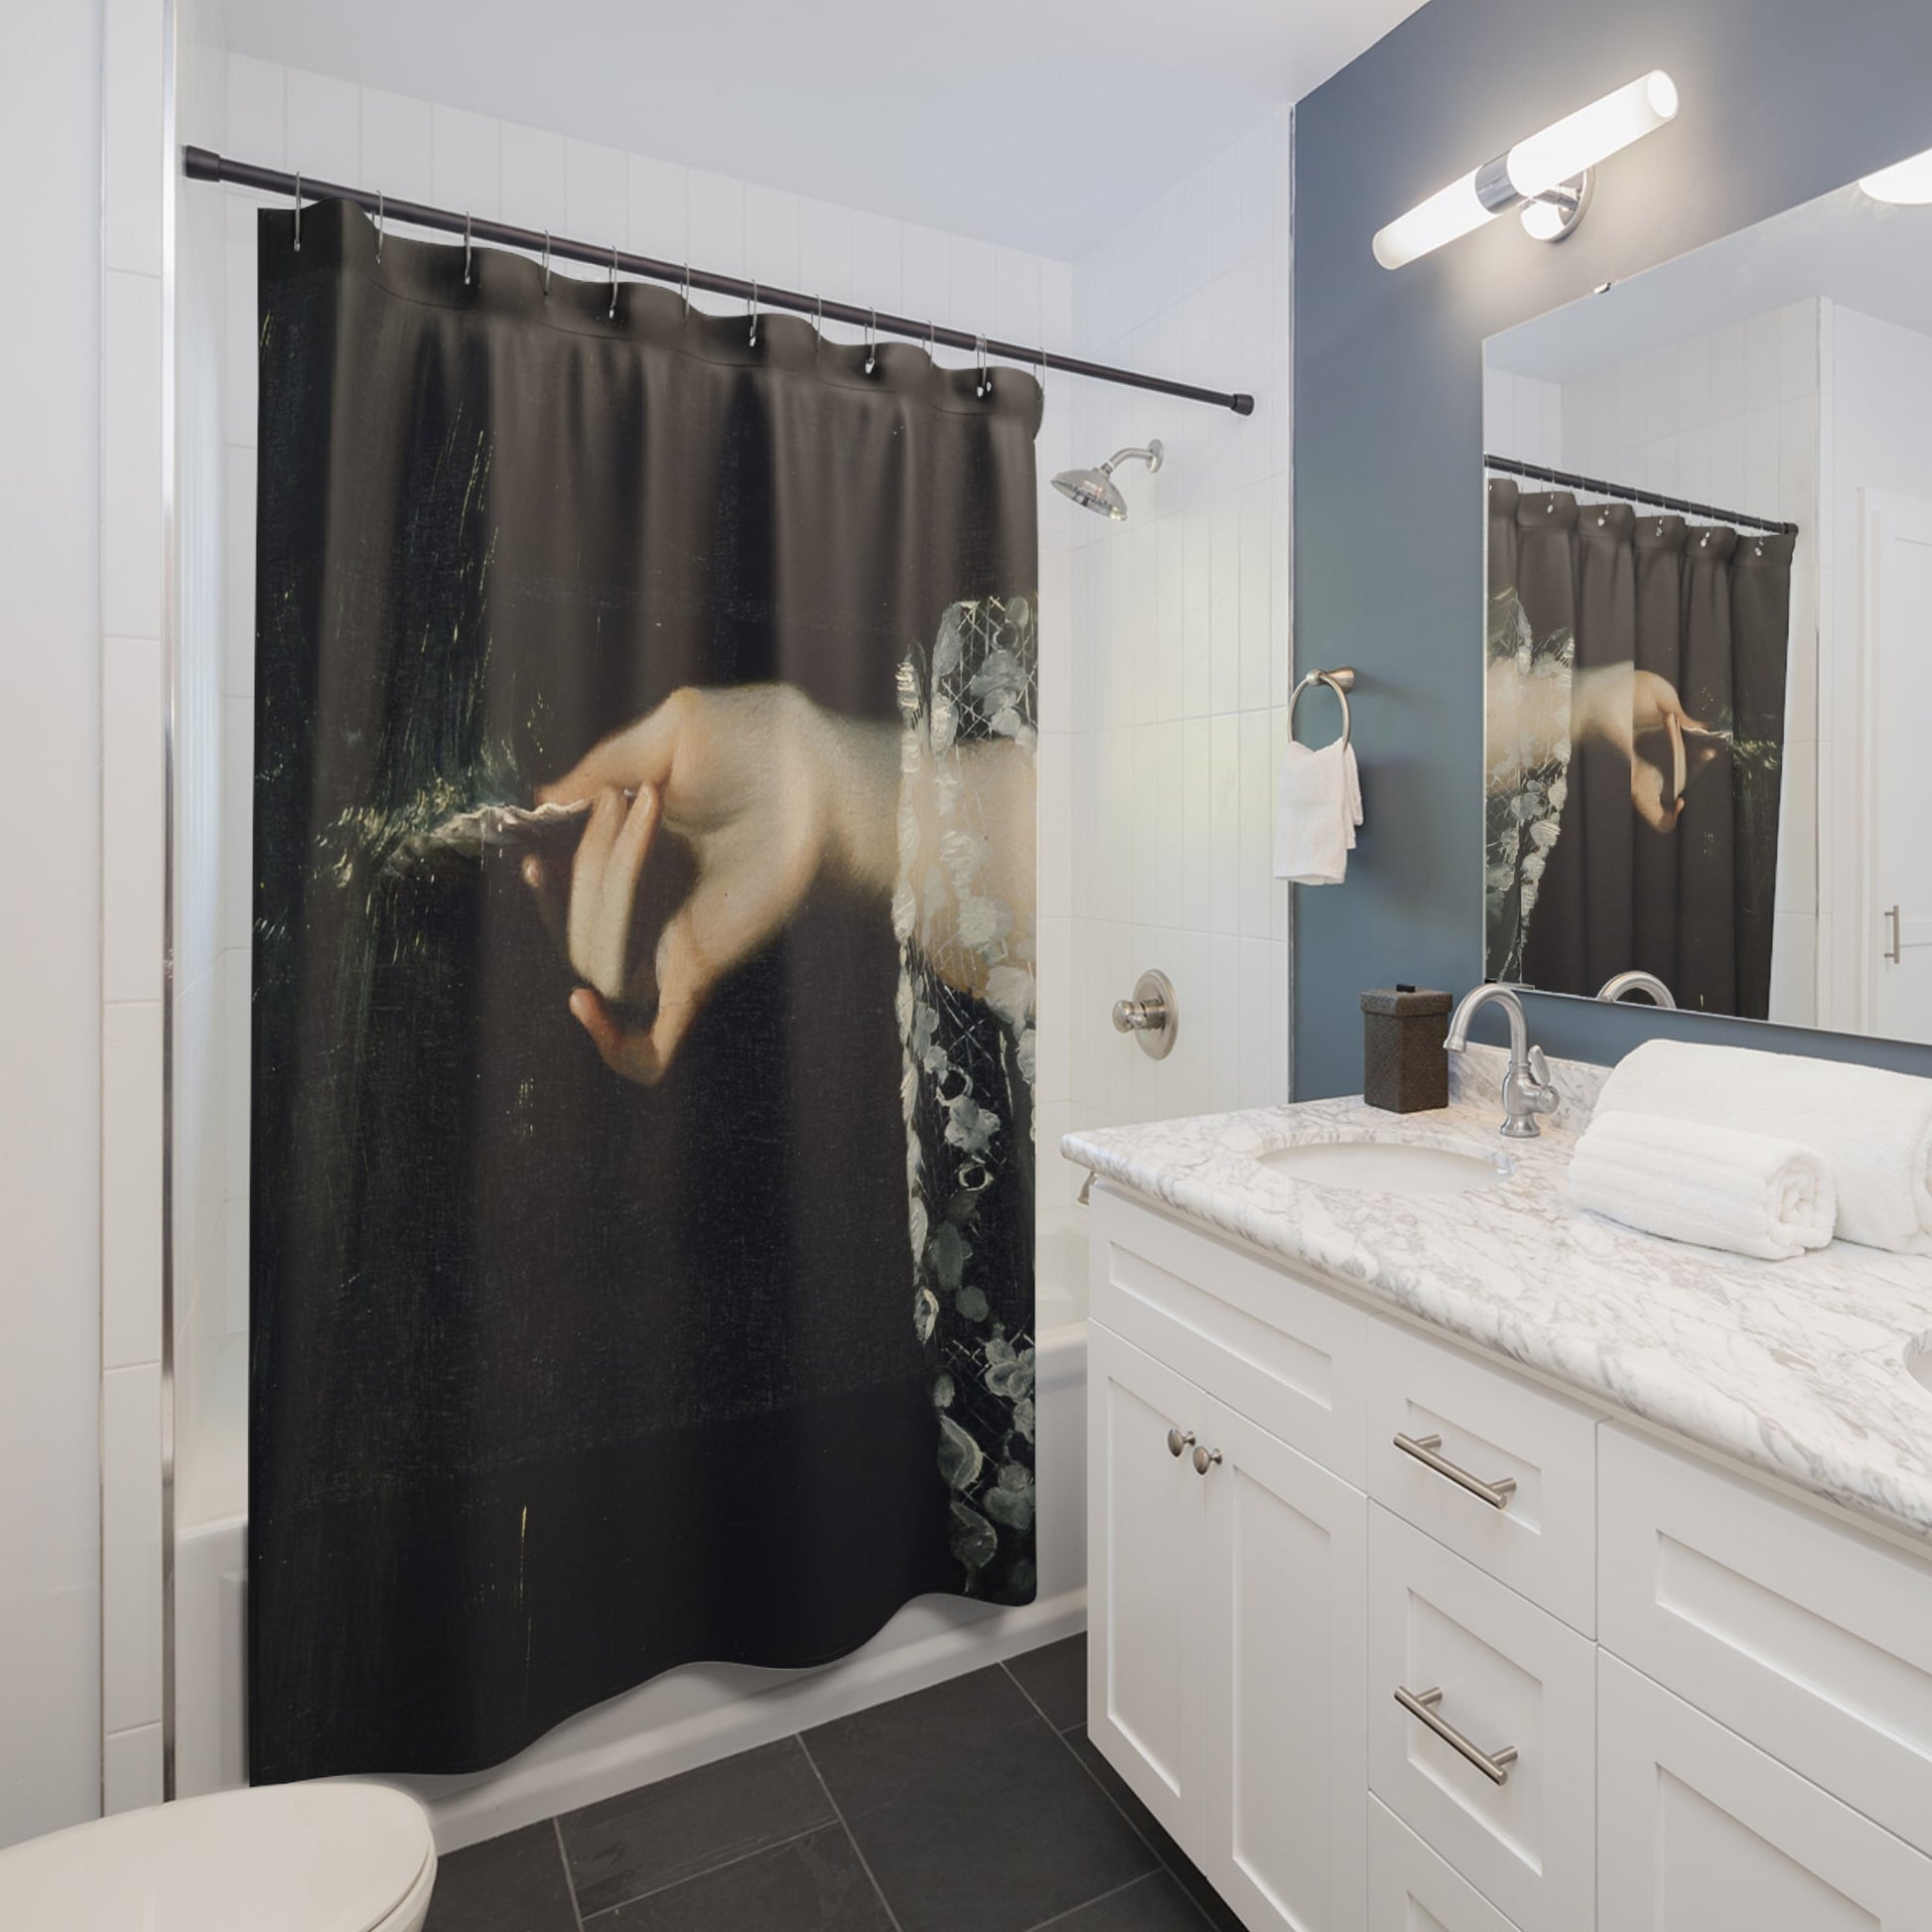 Moody Dark Academia Shower Curtain Best Bathroom Decorating Ideas for Dark Academia Decor